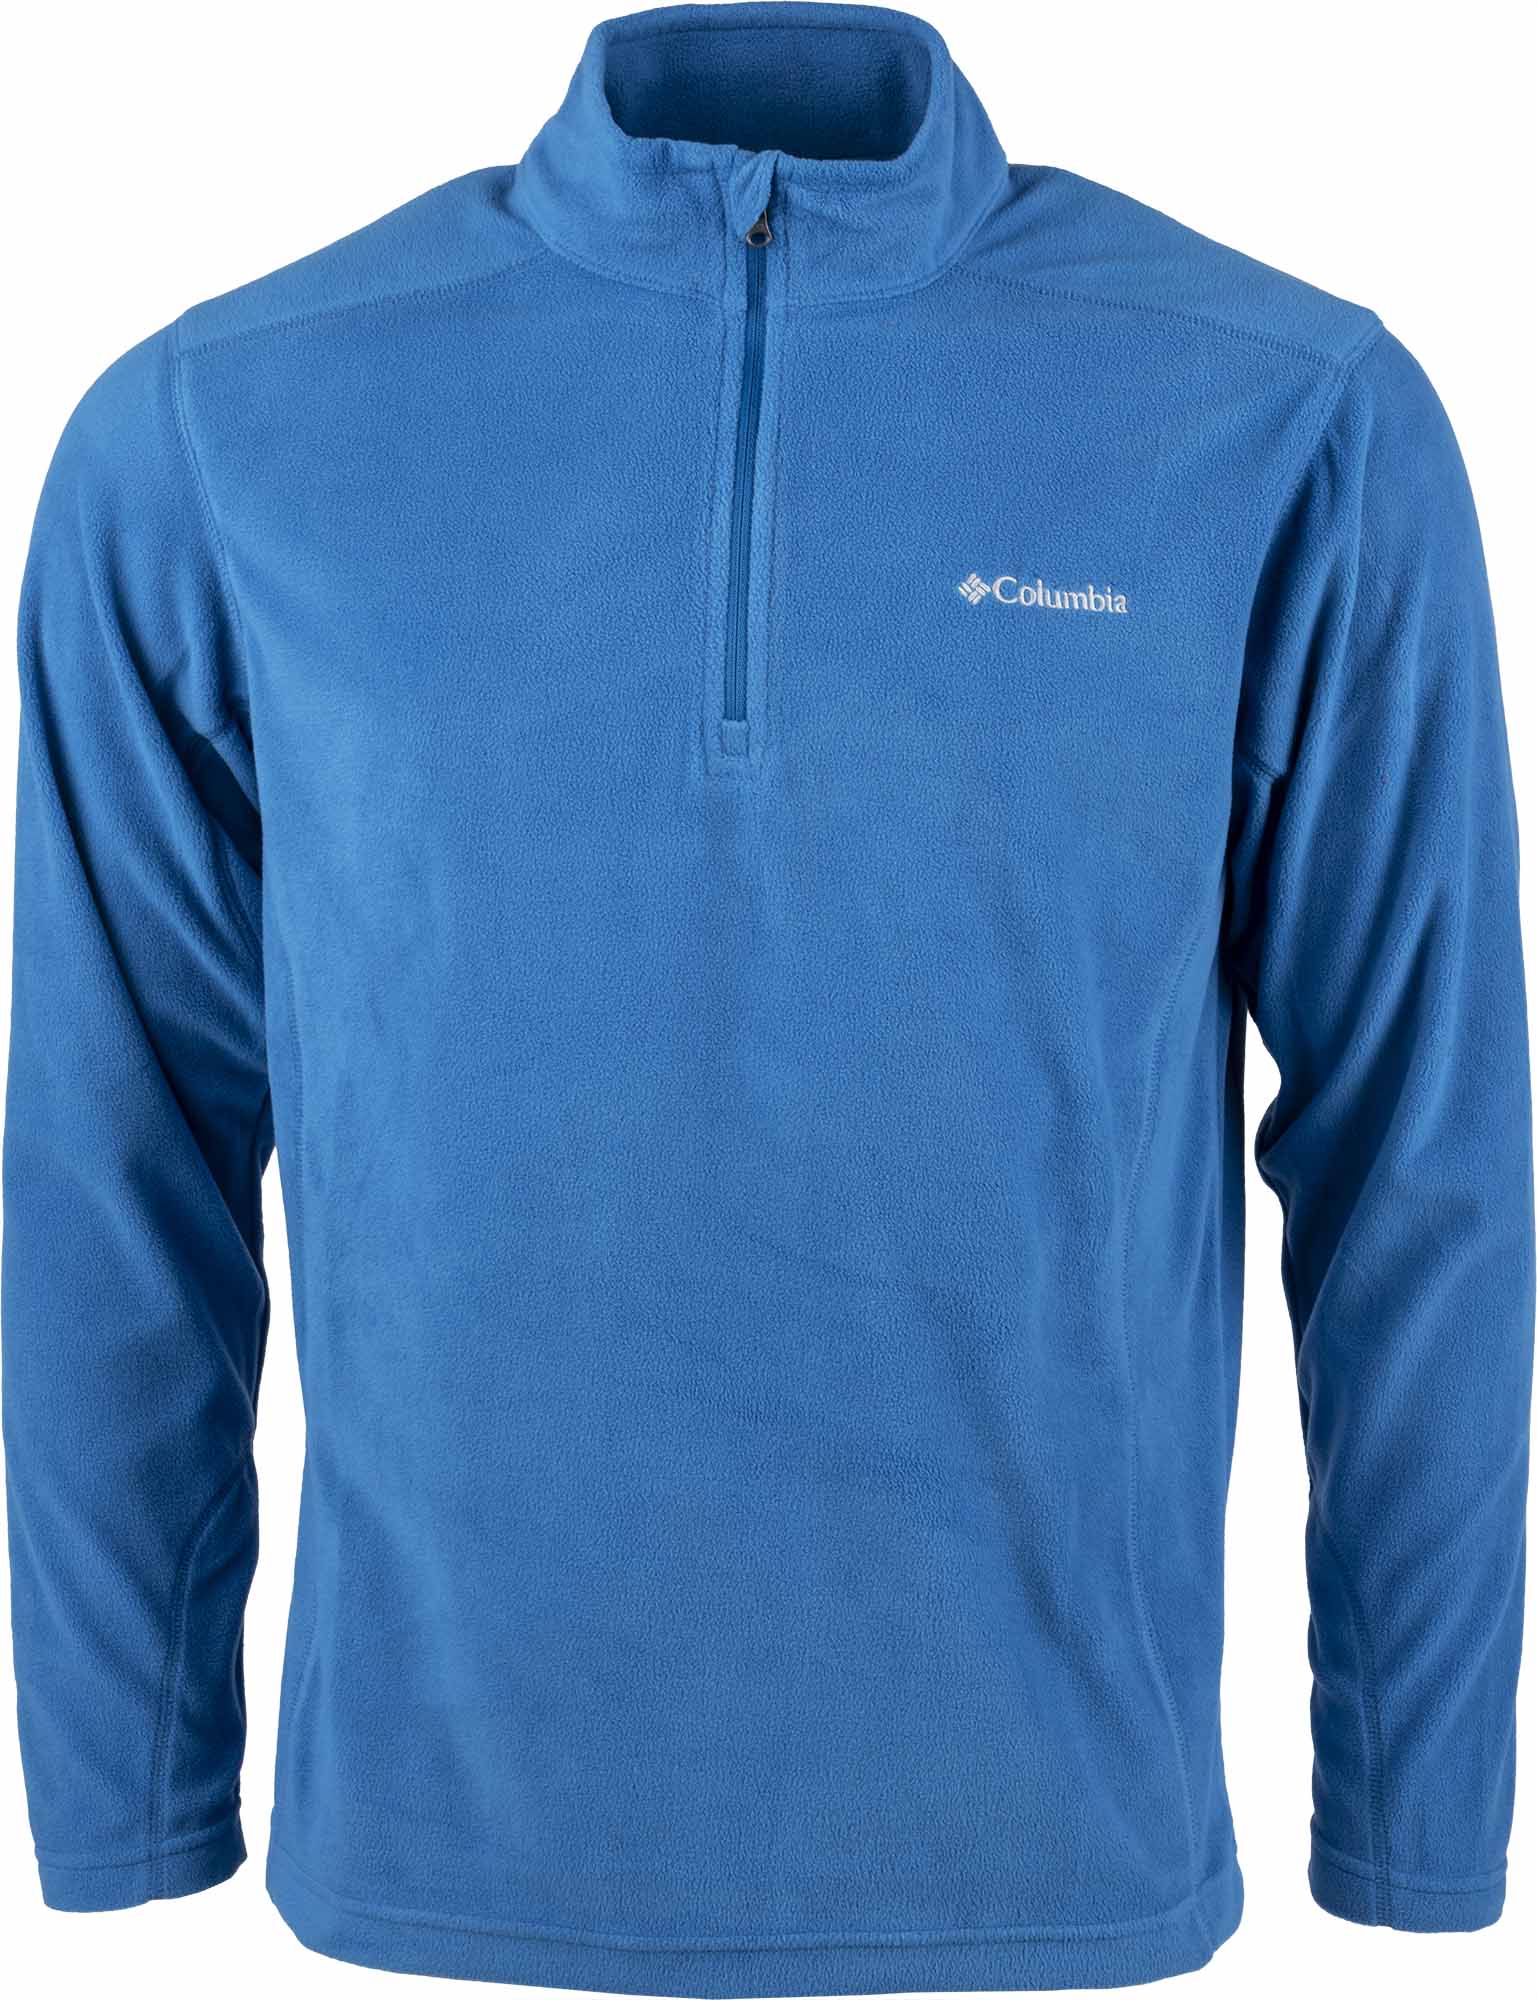 Men's outdoor sweatshirt